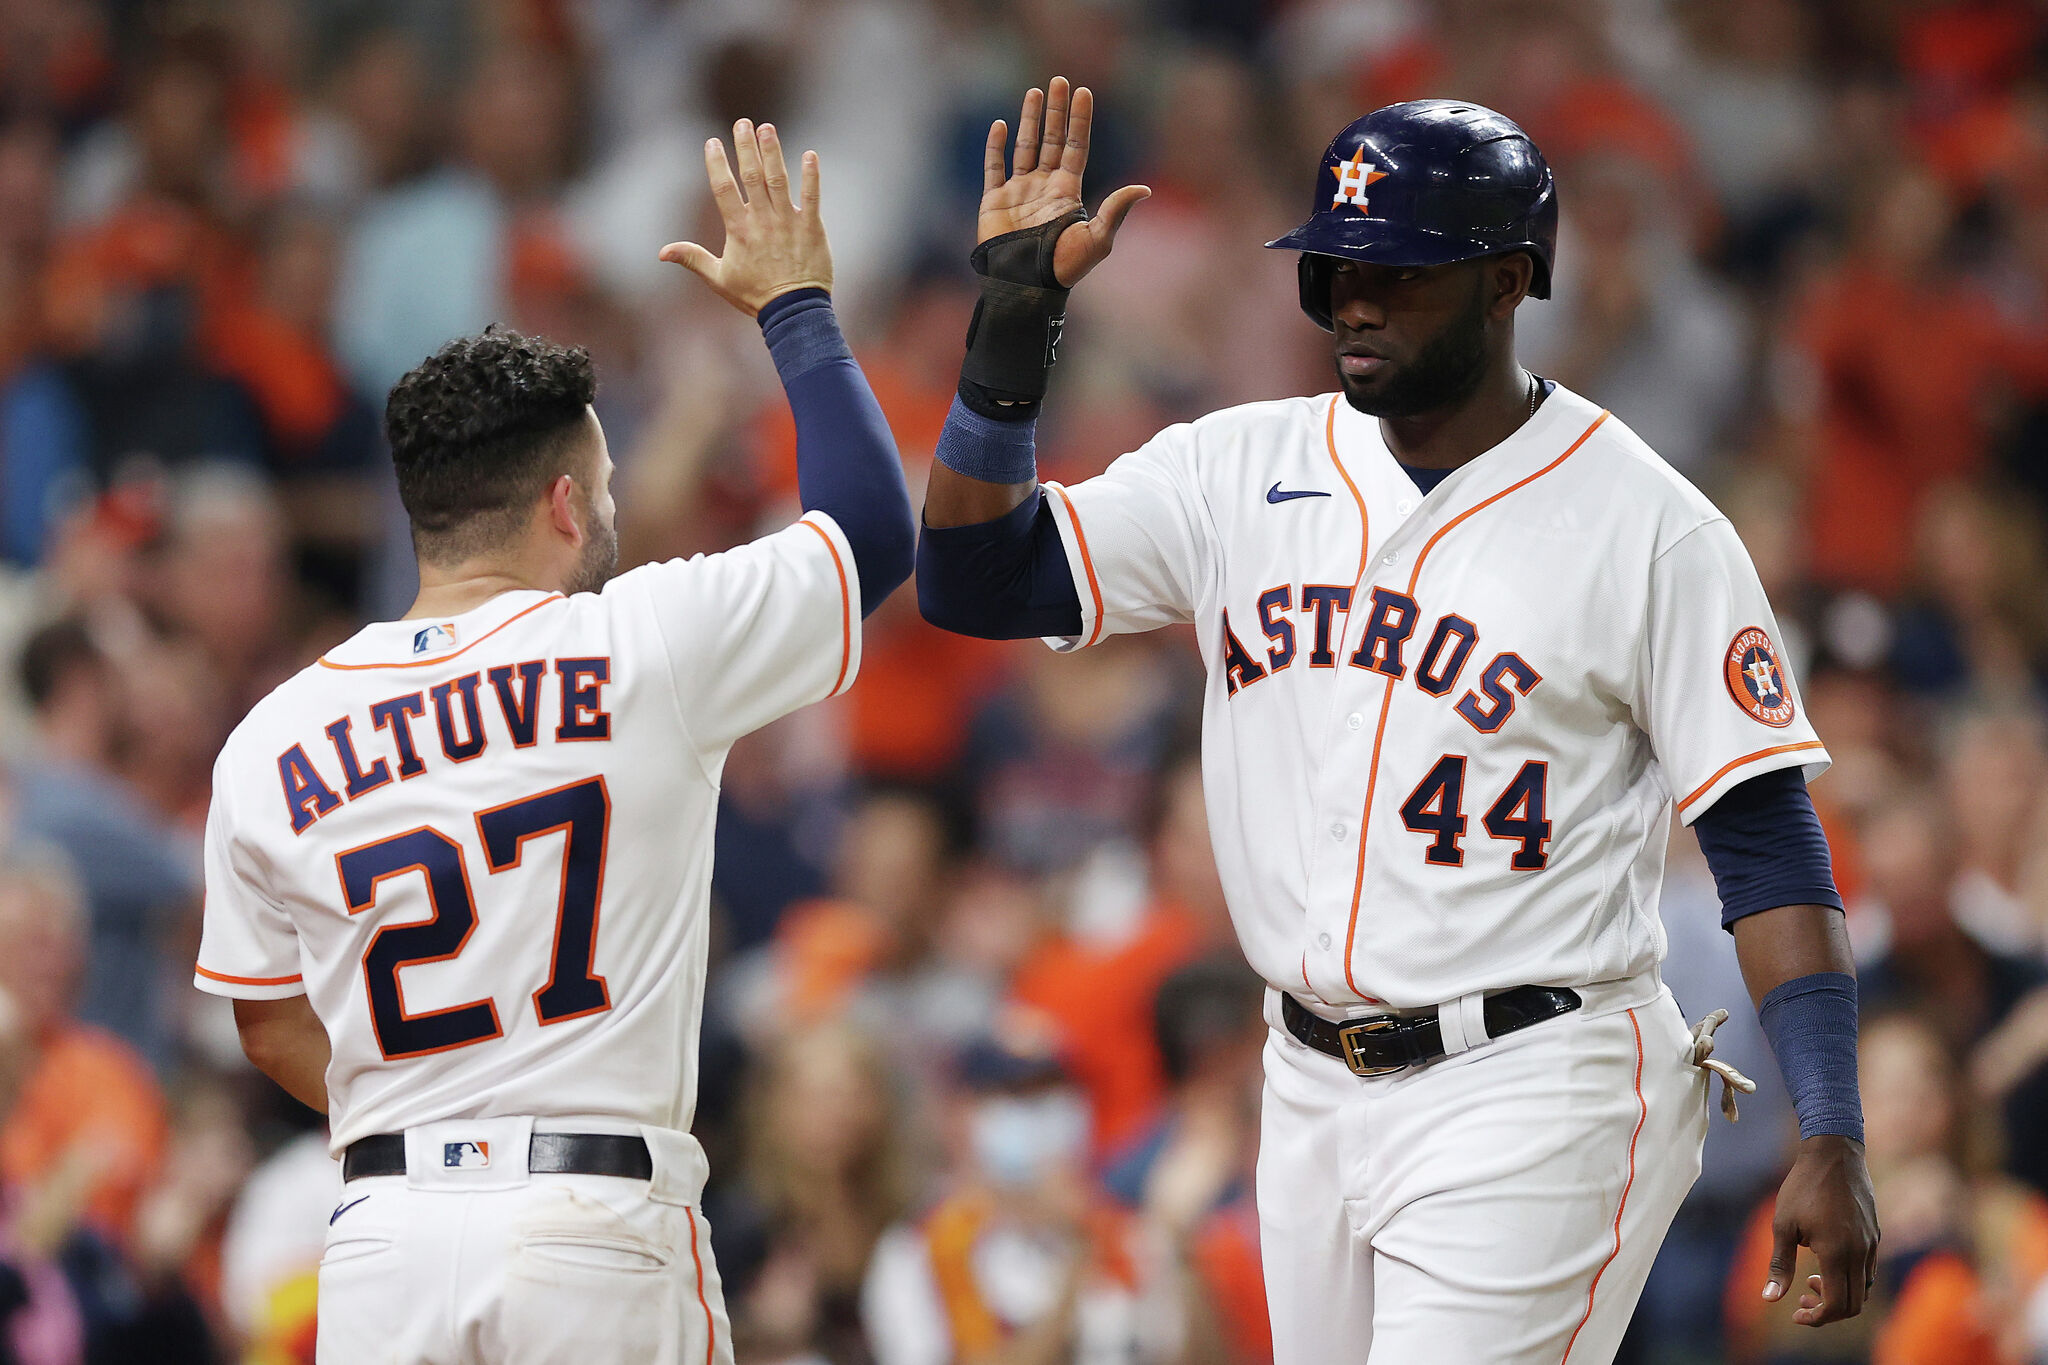 Houston Astros utilityman set to join division rival